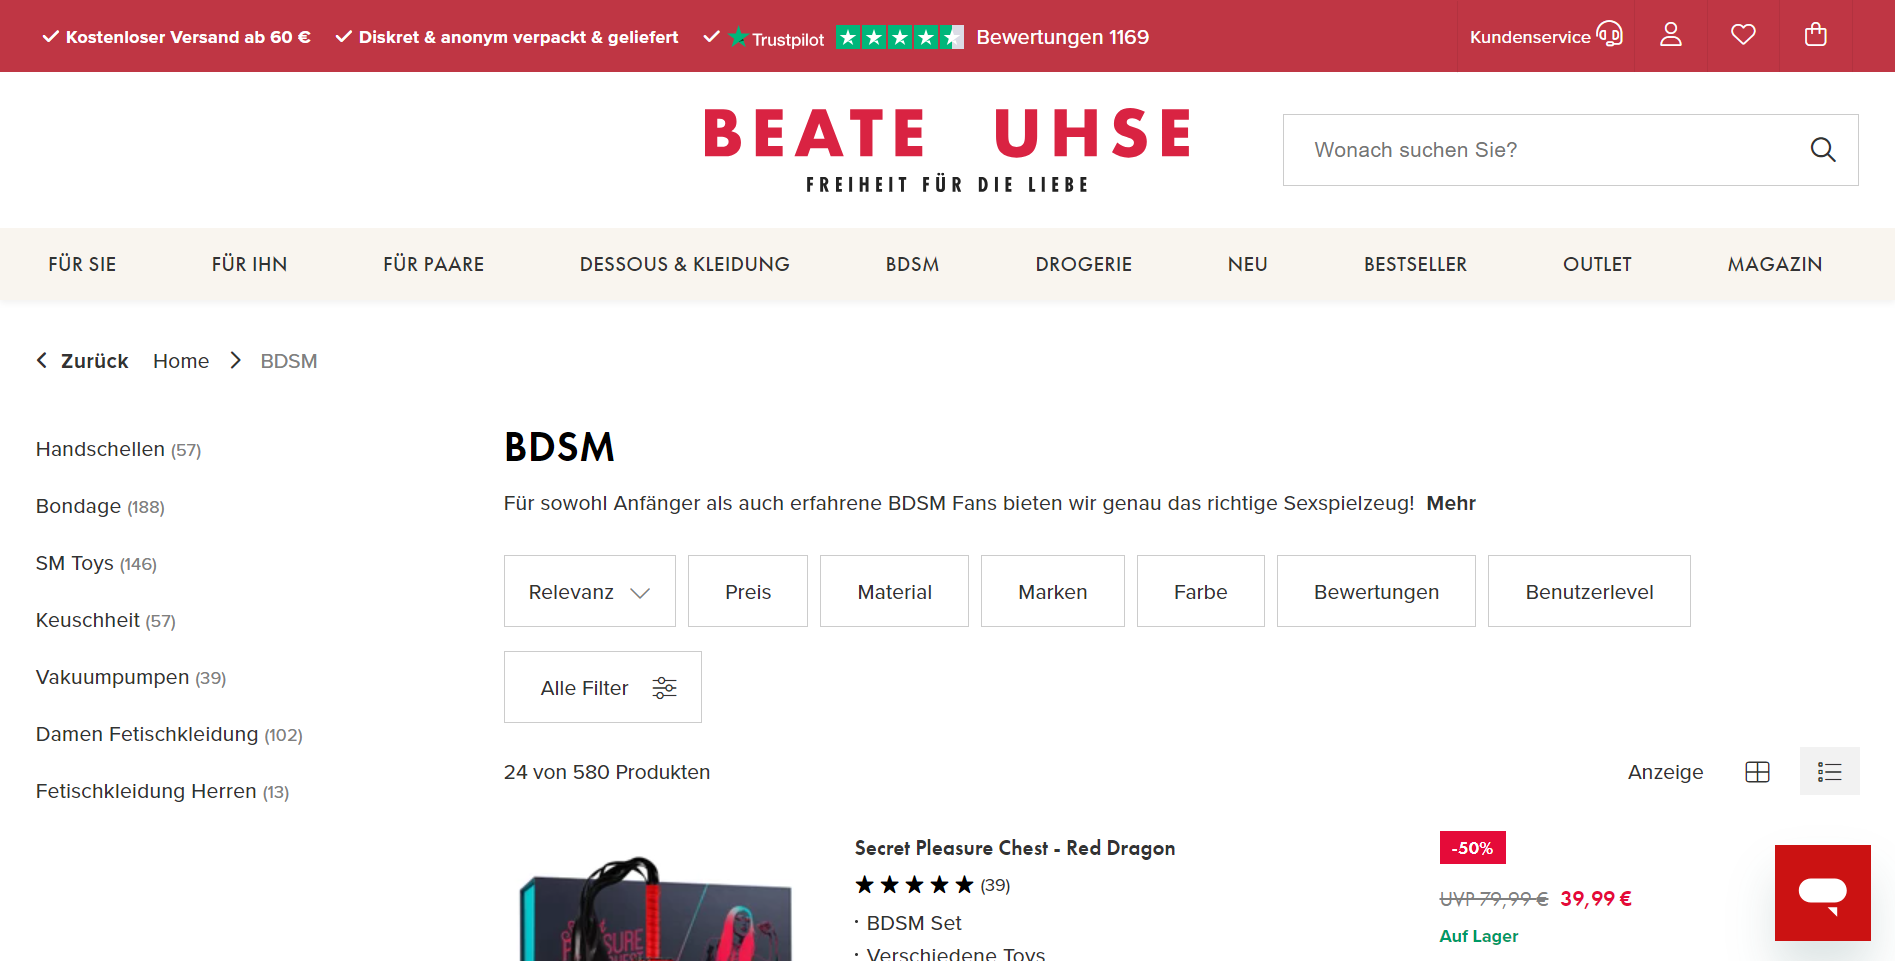 Beate-Uhse - Der originale Online-Shop für Sex- und Erotikprodukte